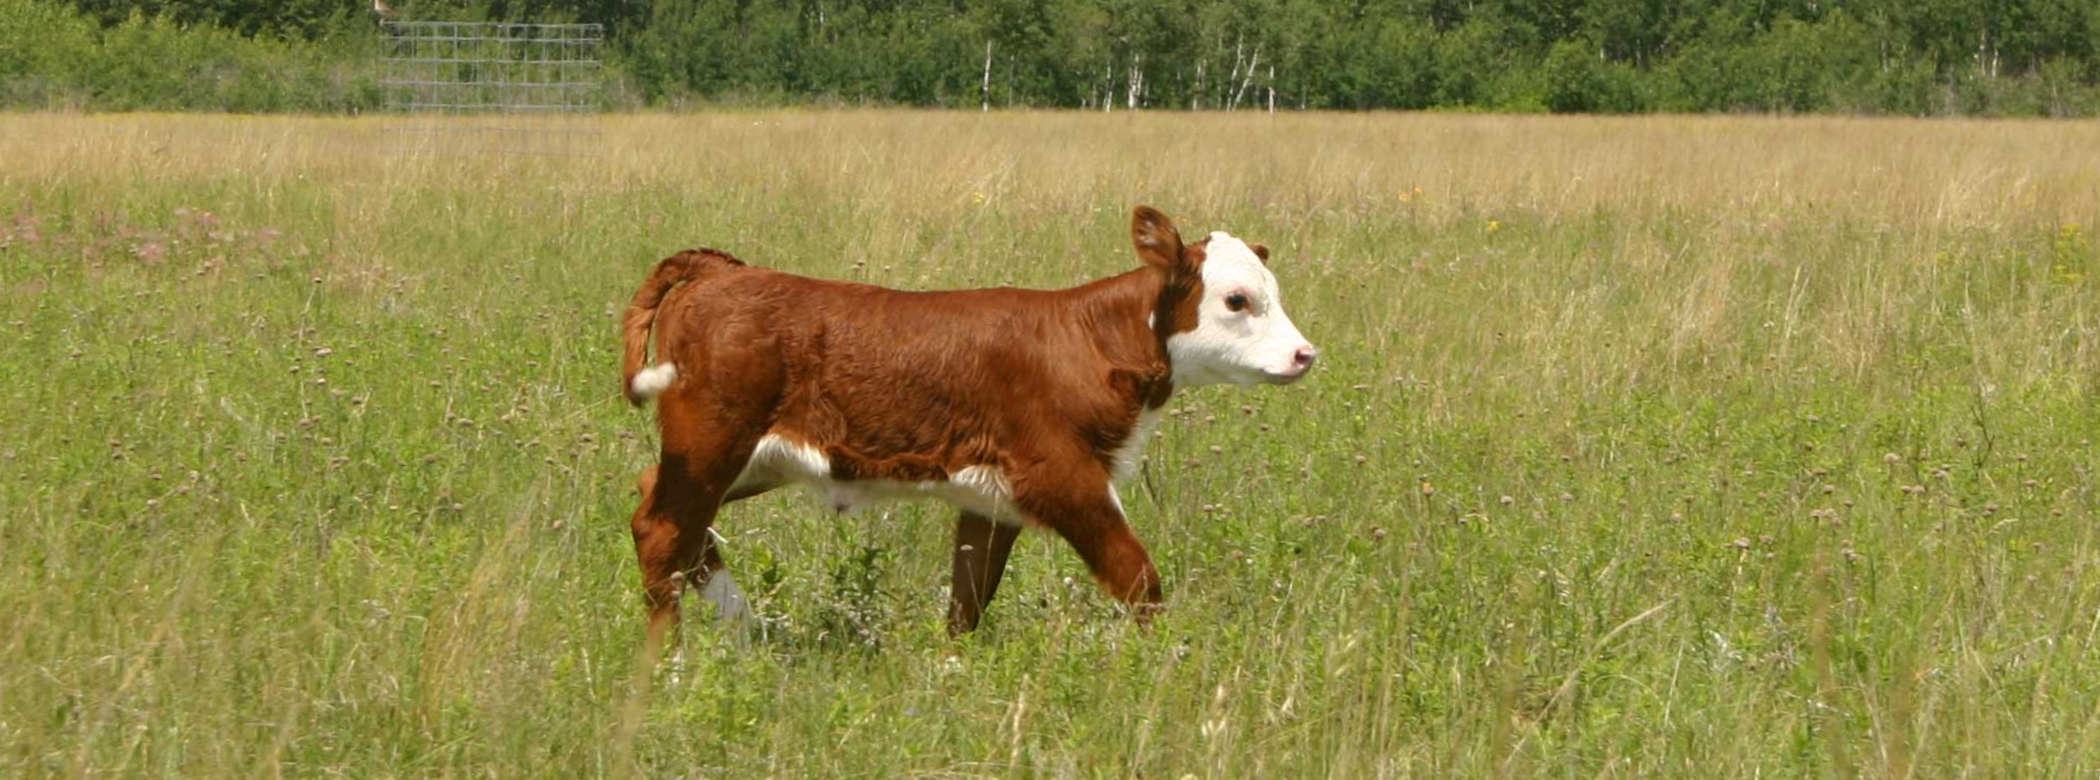 A brown and white calf walking through knee-high grass.